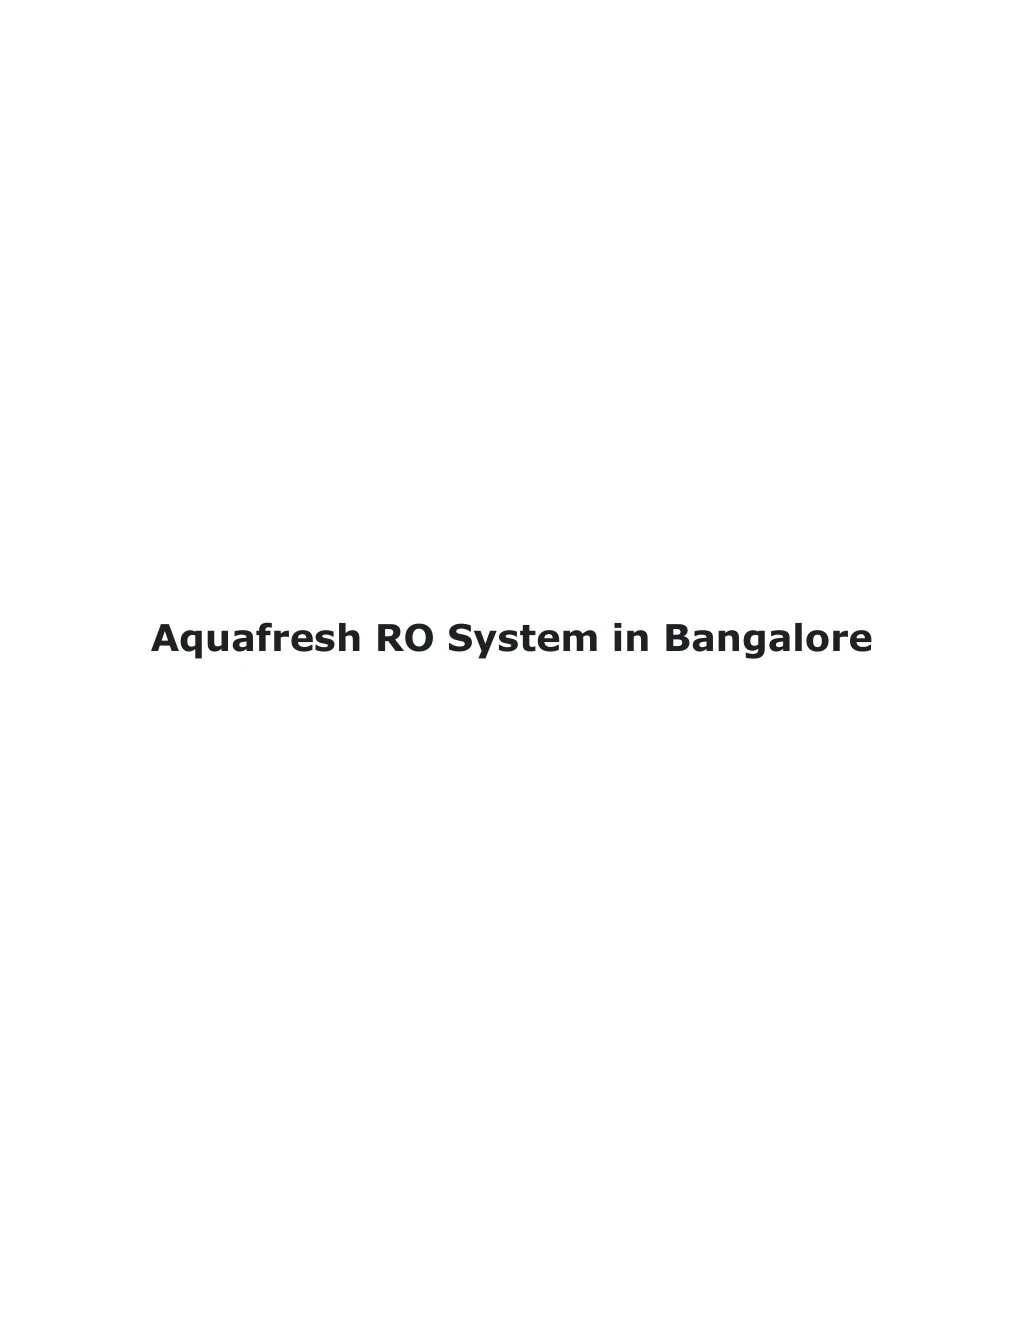 aquafresh ro system in bangalore